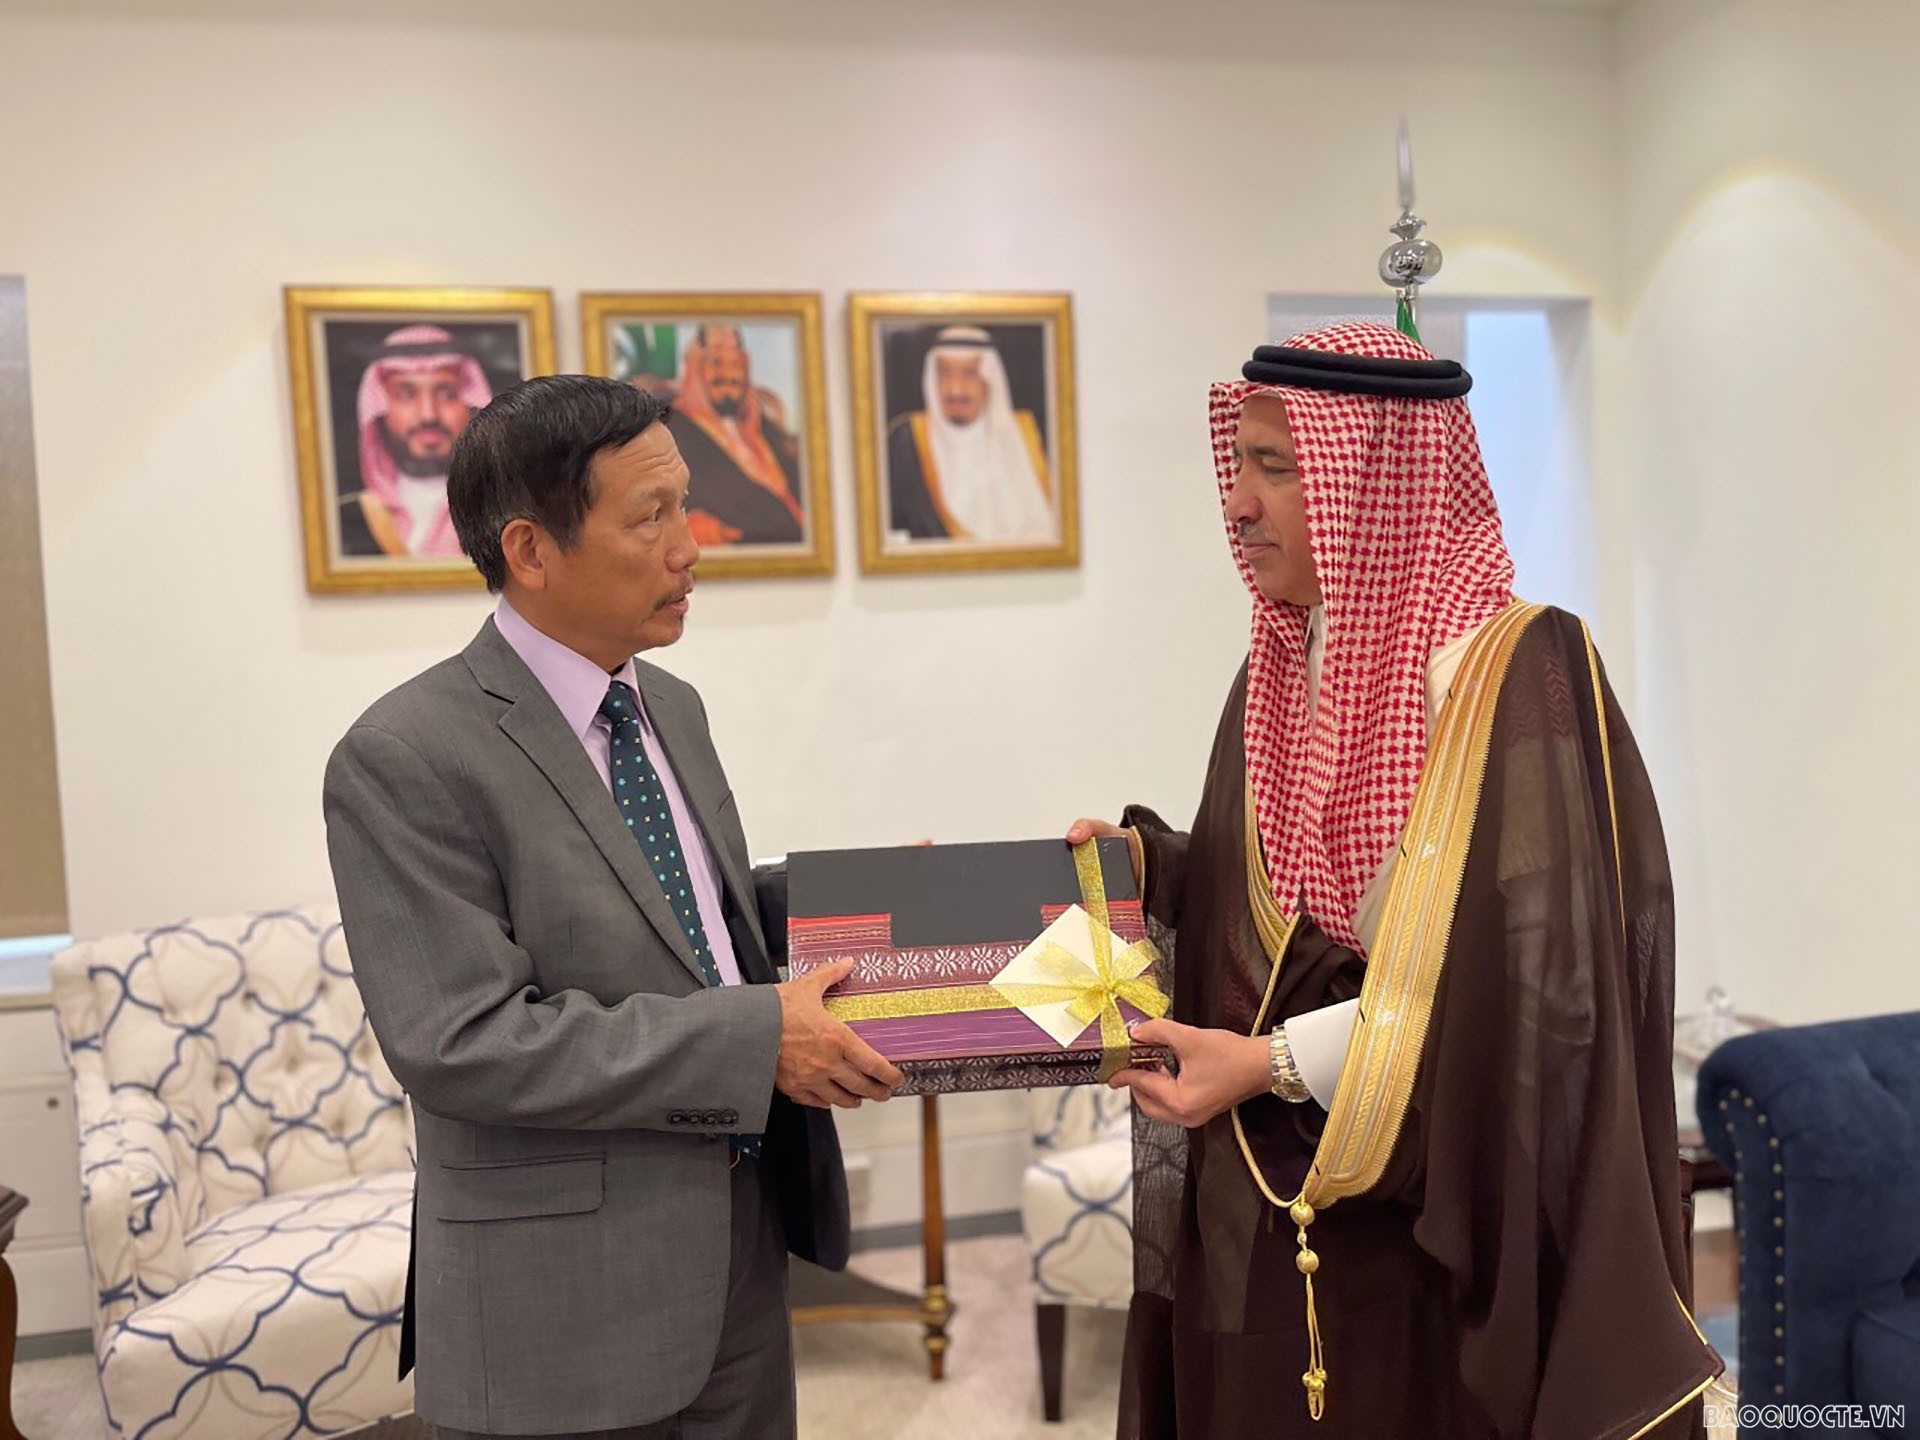 Đại sứ Vũ Viết Dũng chào từ biệt Thứ trưởng Bộ Ngoại giao Khalid bin Faisal Al-Sahli.